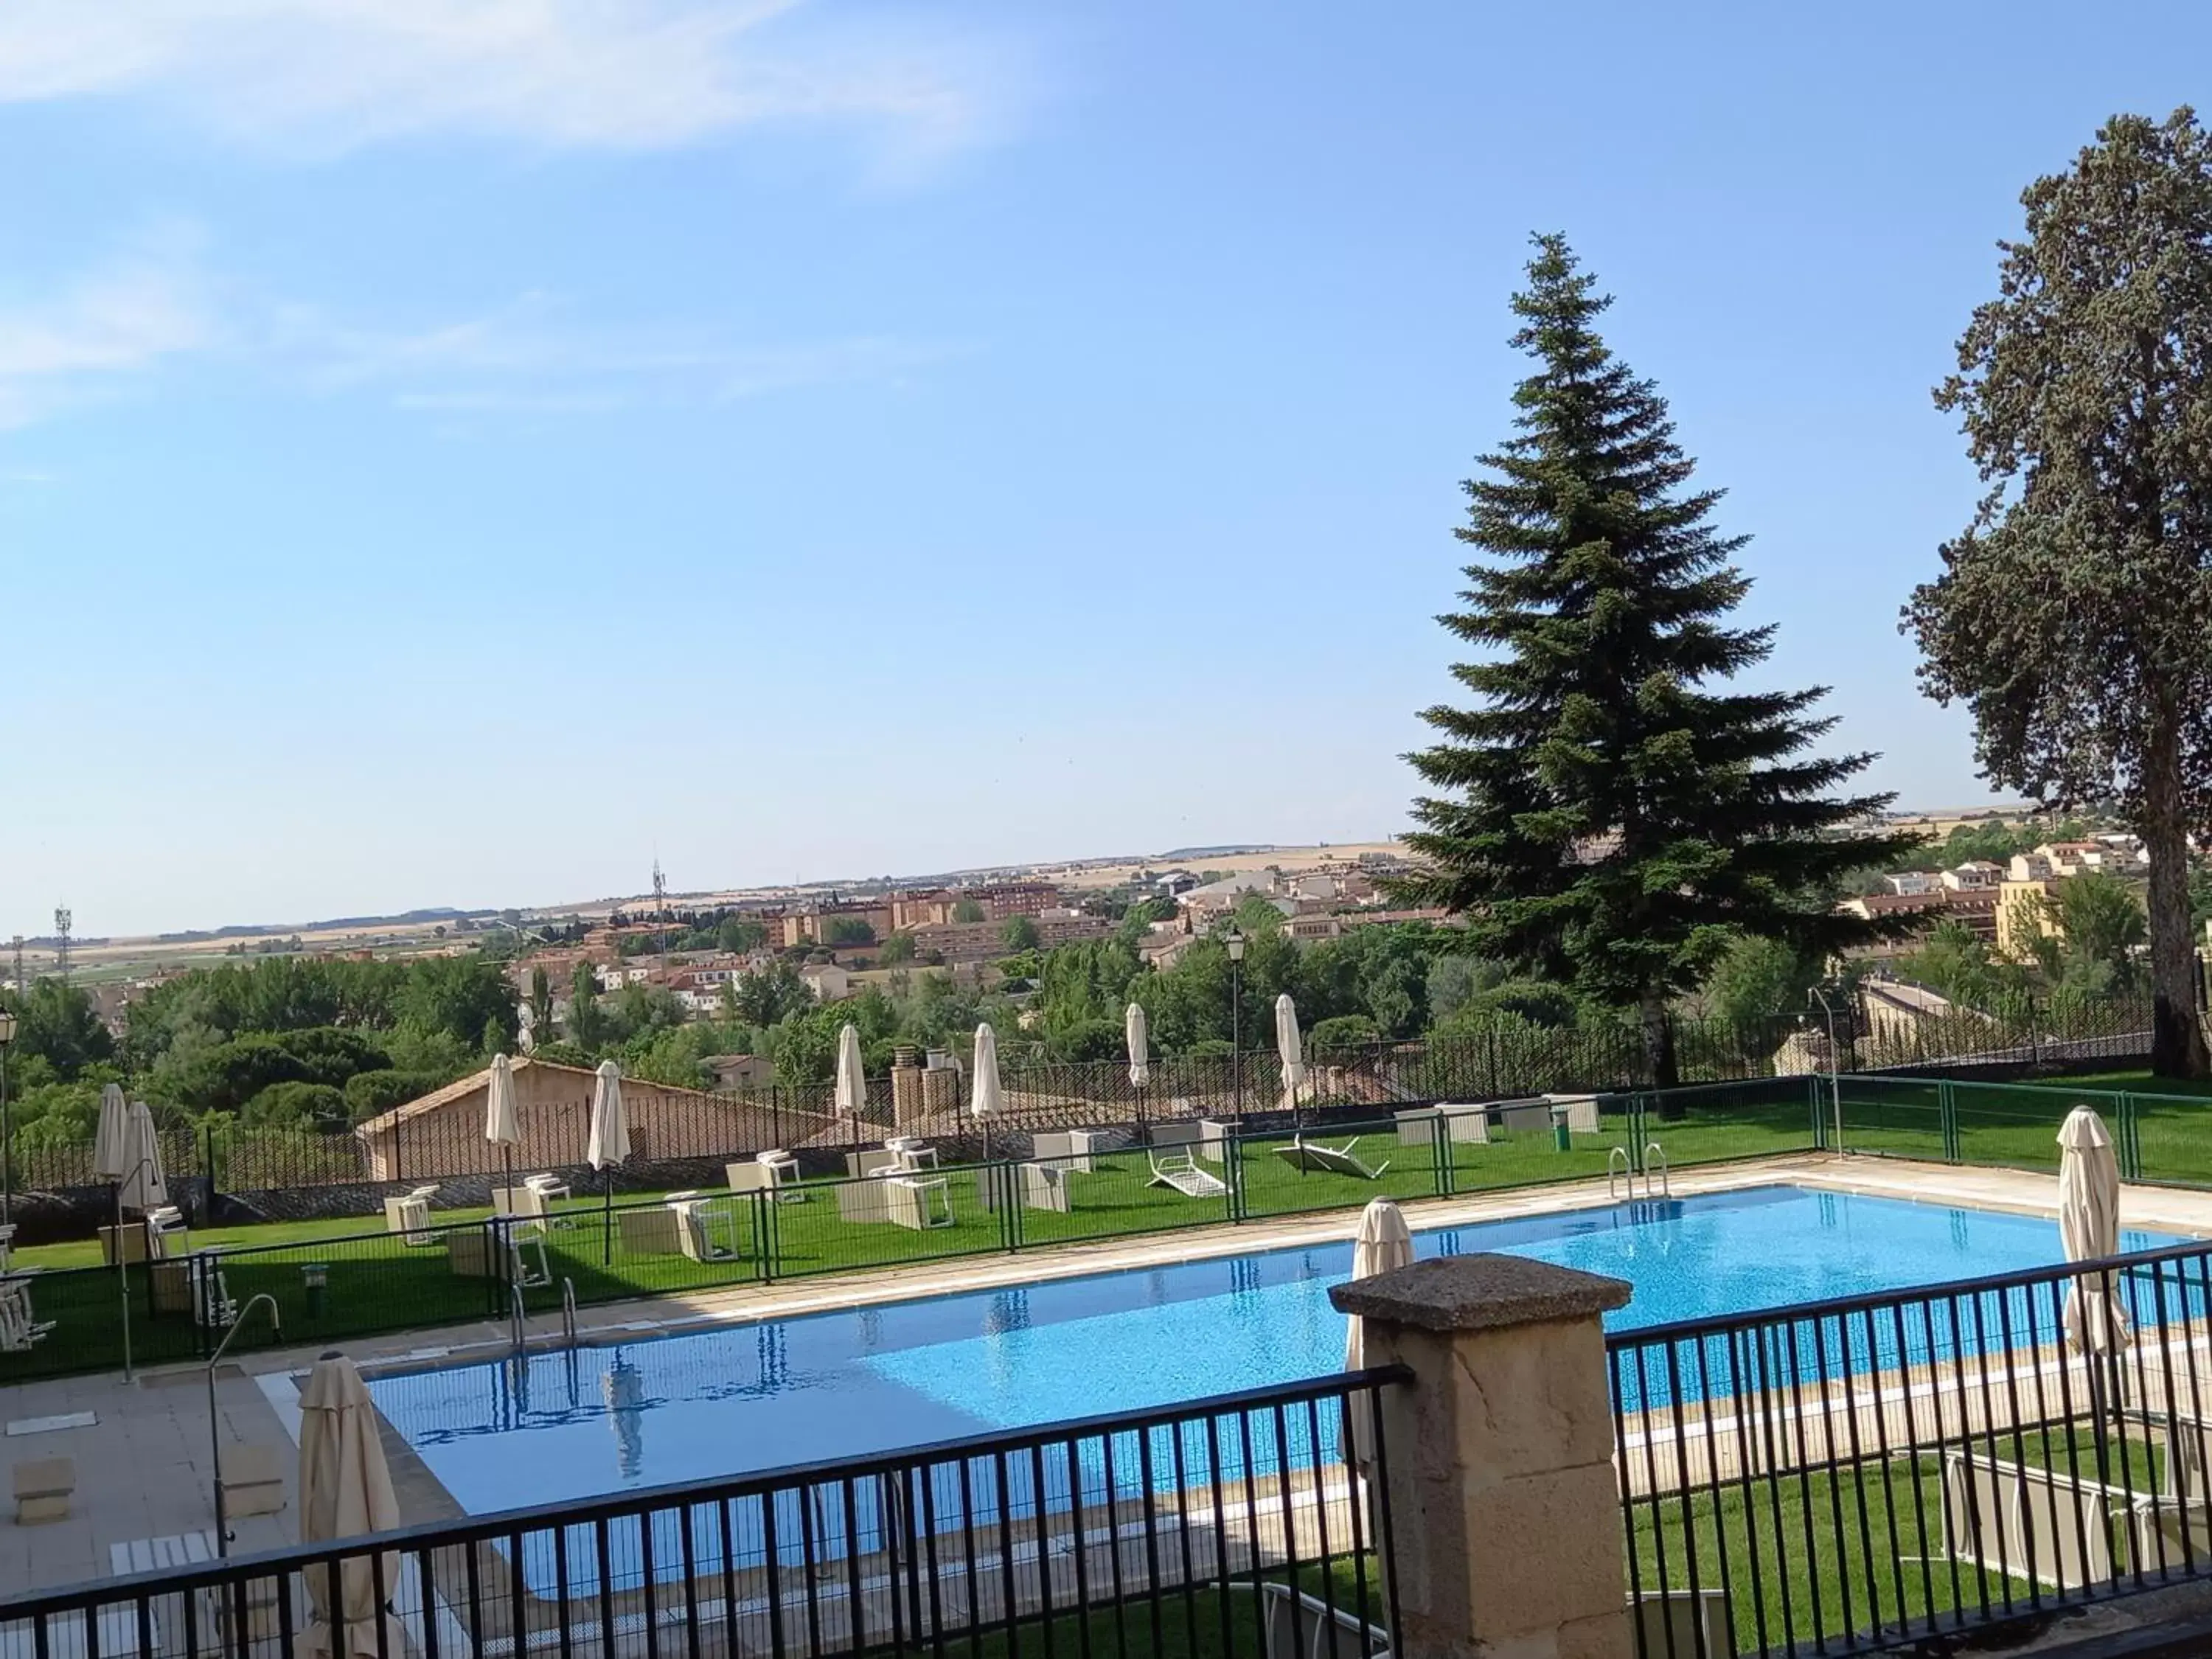 Pool View in Parador de Zamora